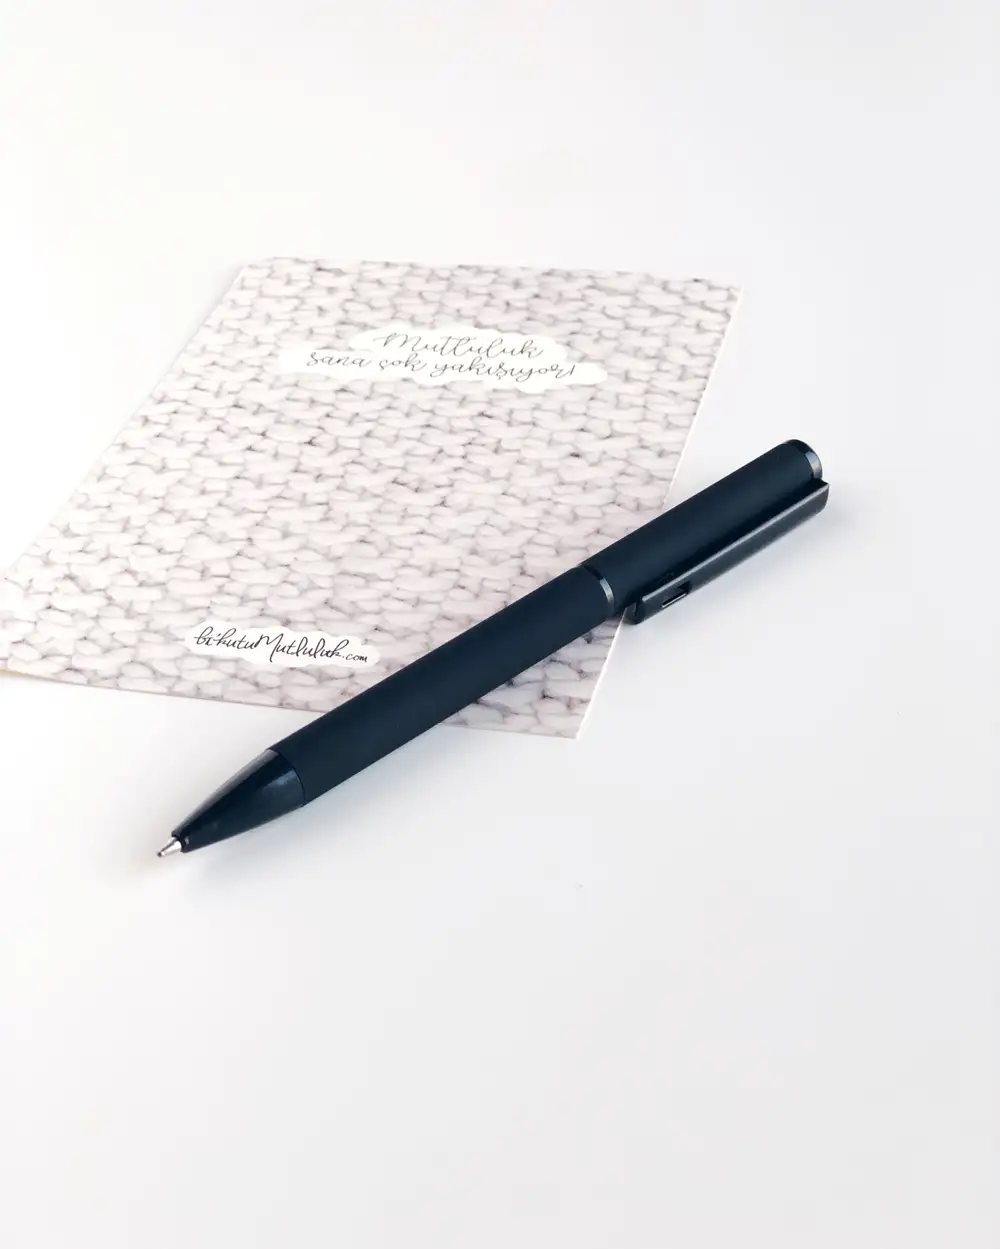 Soft touch tükenmez kalem - siyah